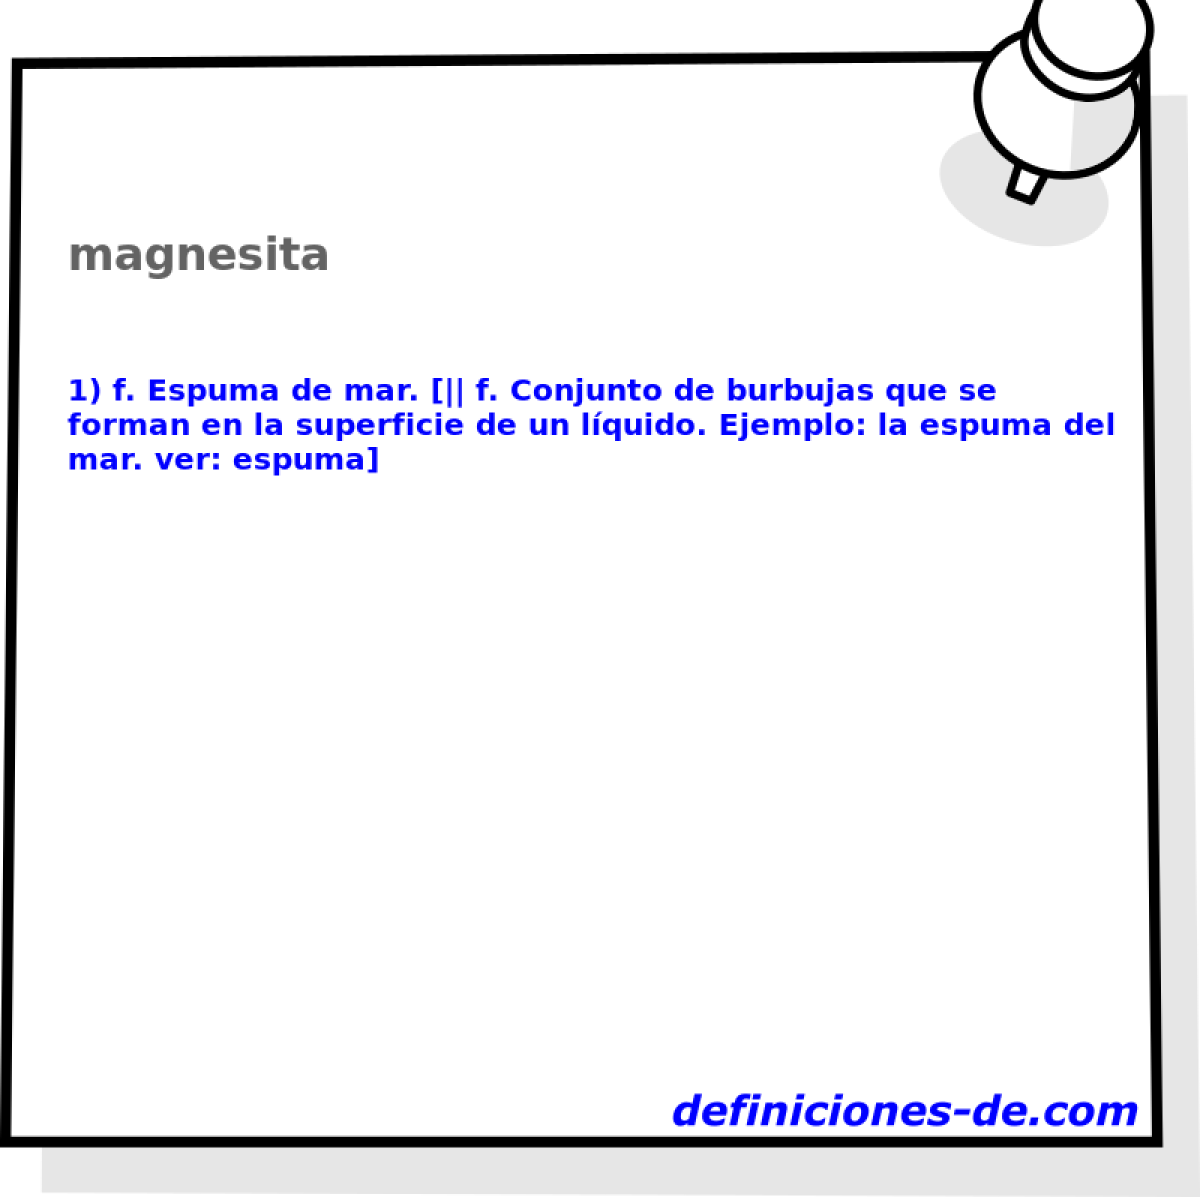 magnesita 